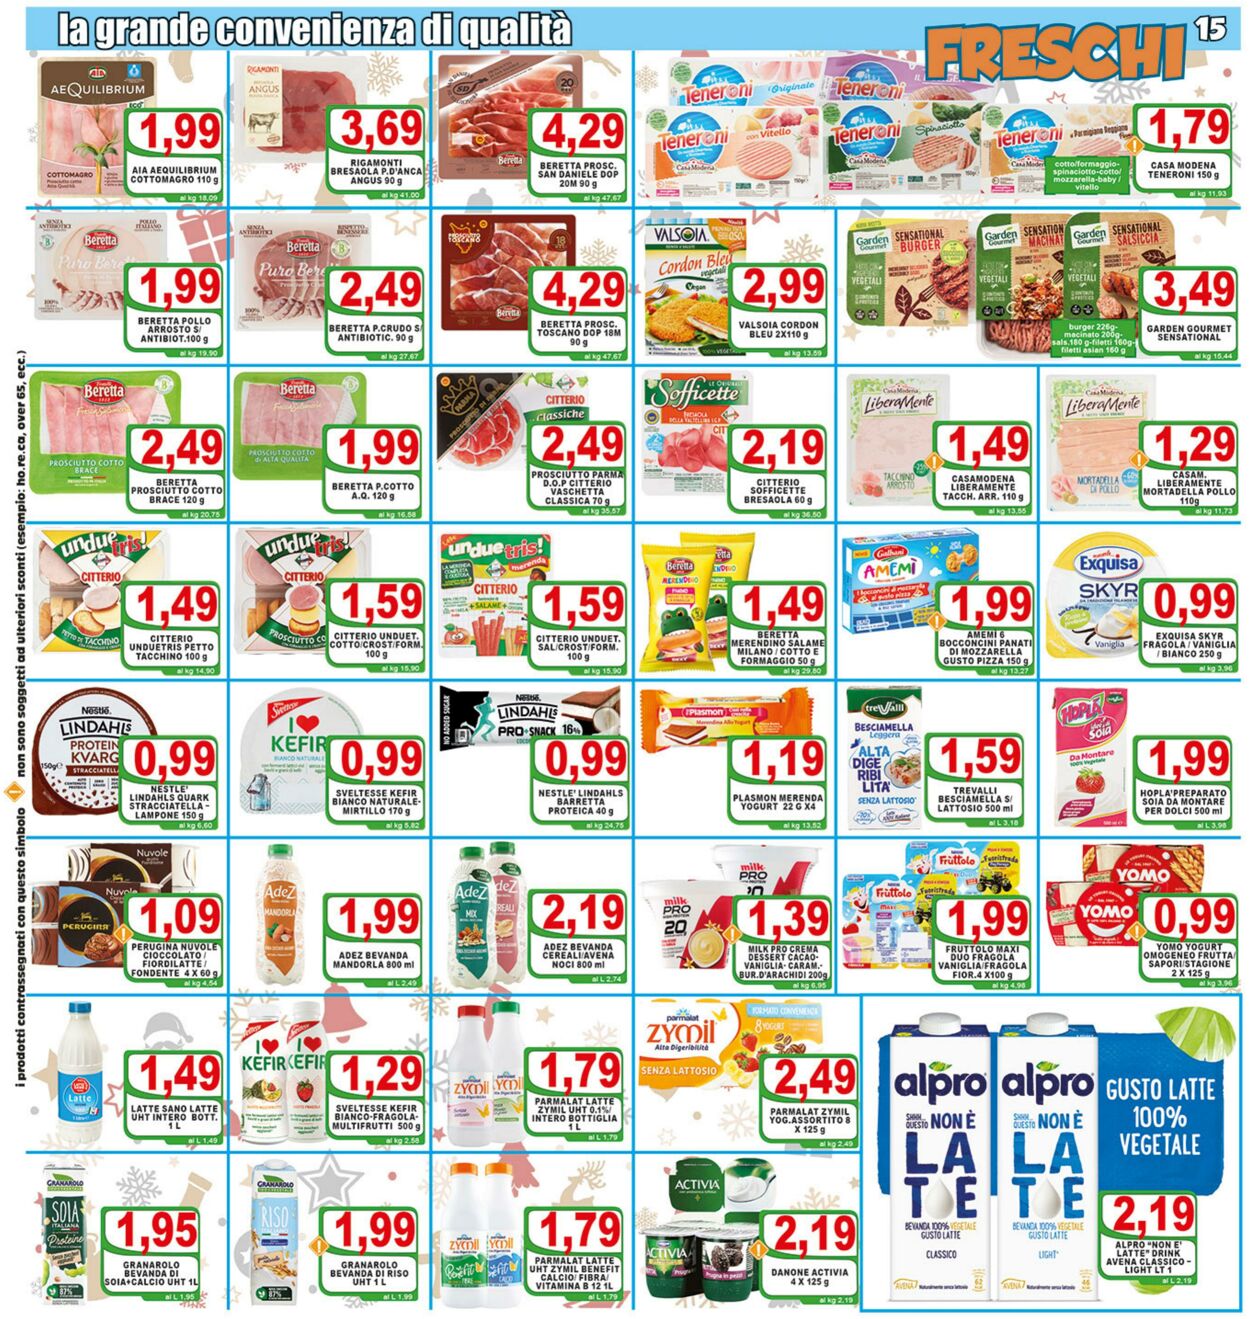 Top Supermercati Volantino Promozionale - Capodanno 2023 - Befana 2023 -  Valido da 27.12 a 06.01 - Pagina N. 15 